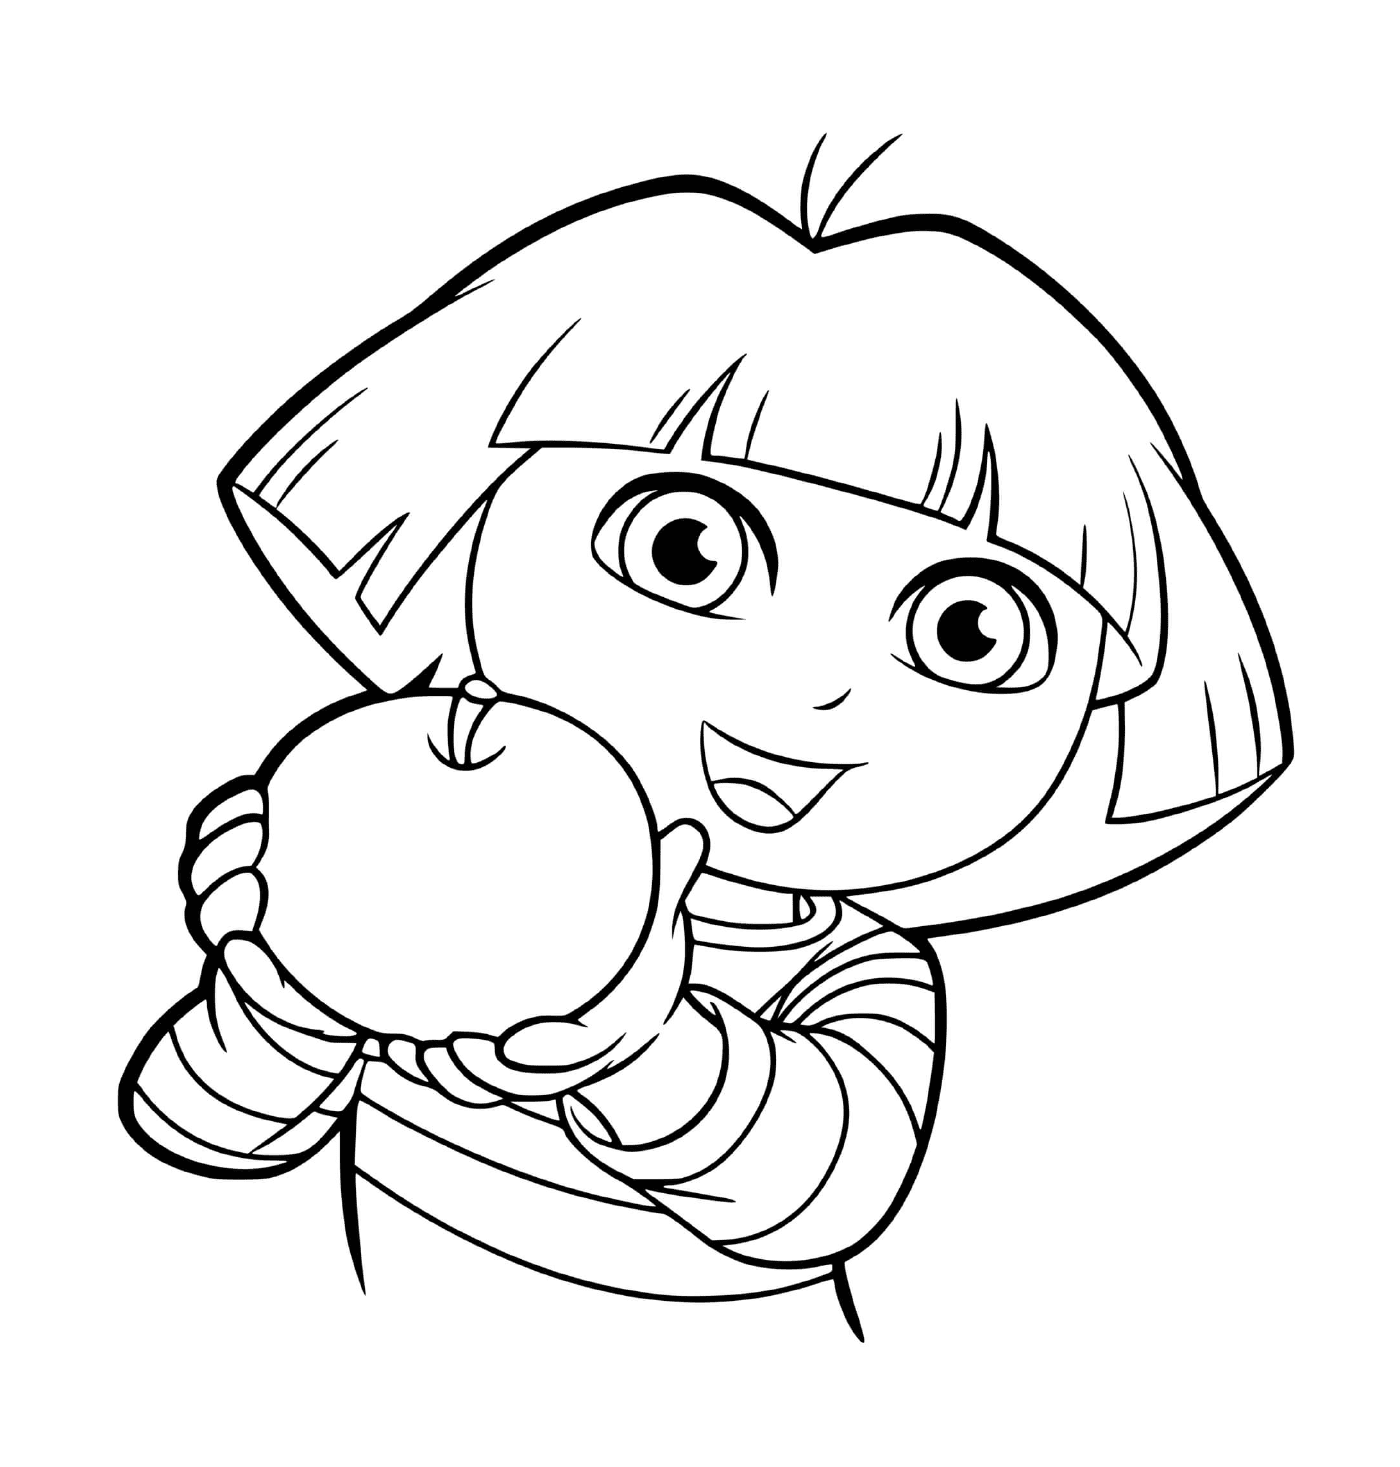  A Dora le encanta comer manzanas con apetito 